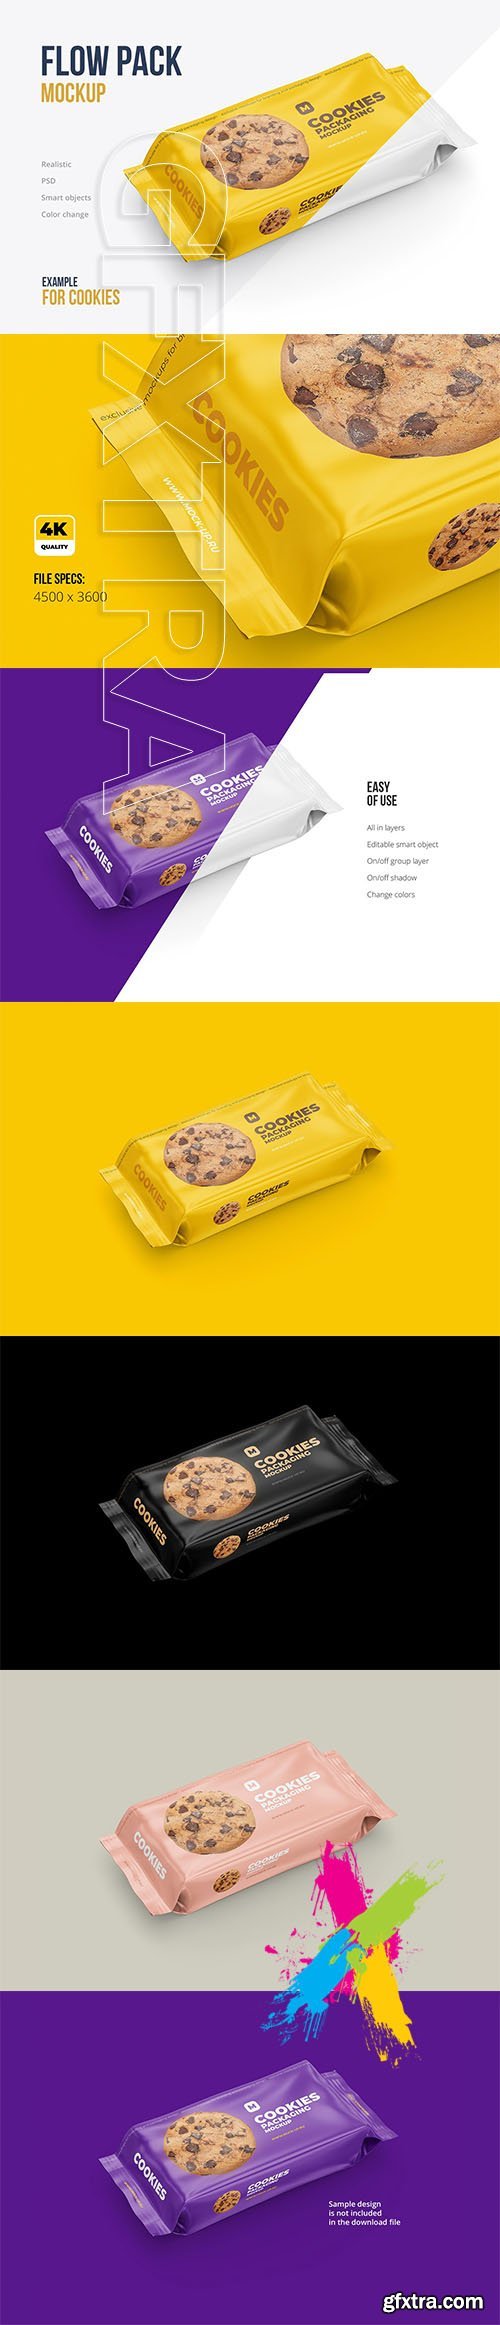 CreativeMarket - Flow Pack Cookies Mockup 4583812